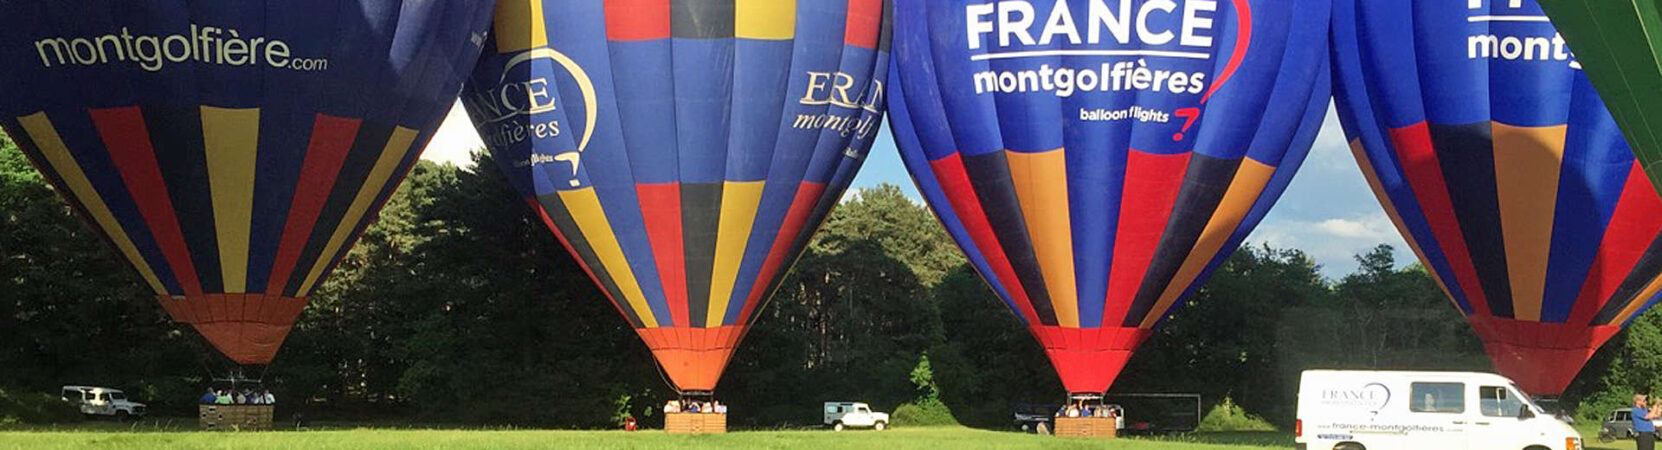 Vol en montgolfière Ile de France Fontainebleau Hot air Balloon